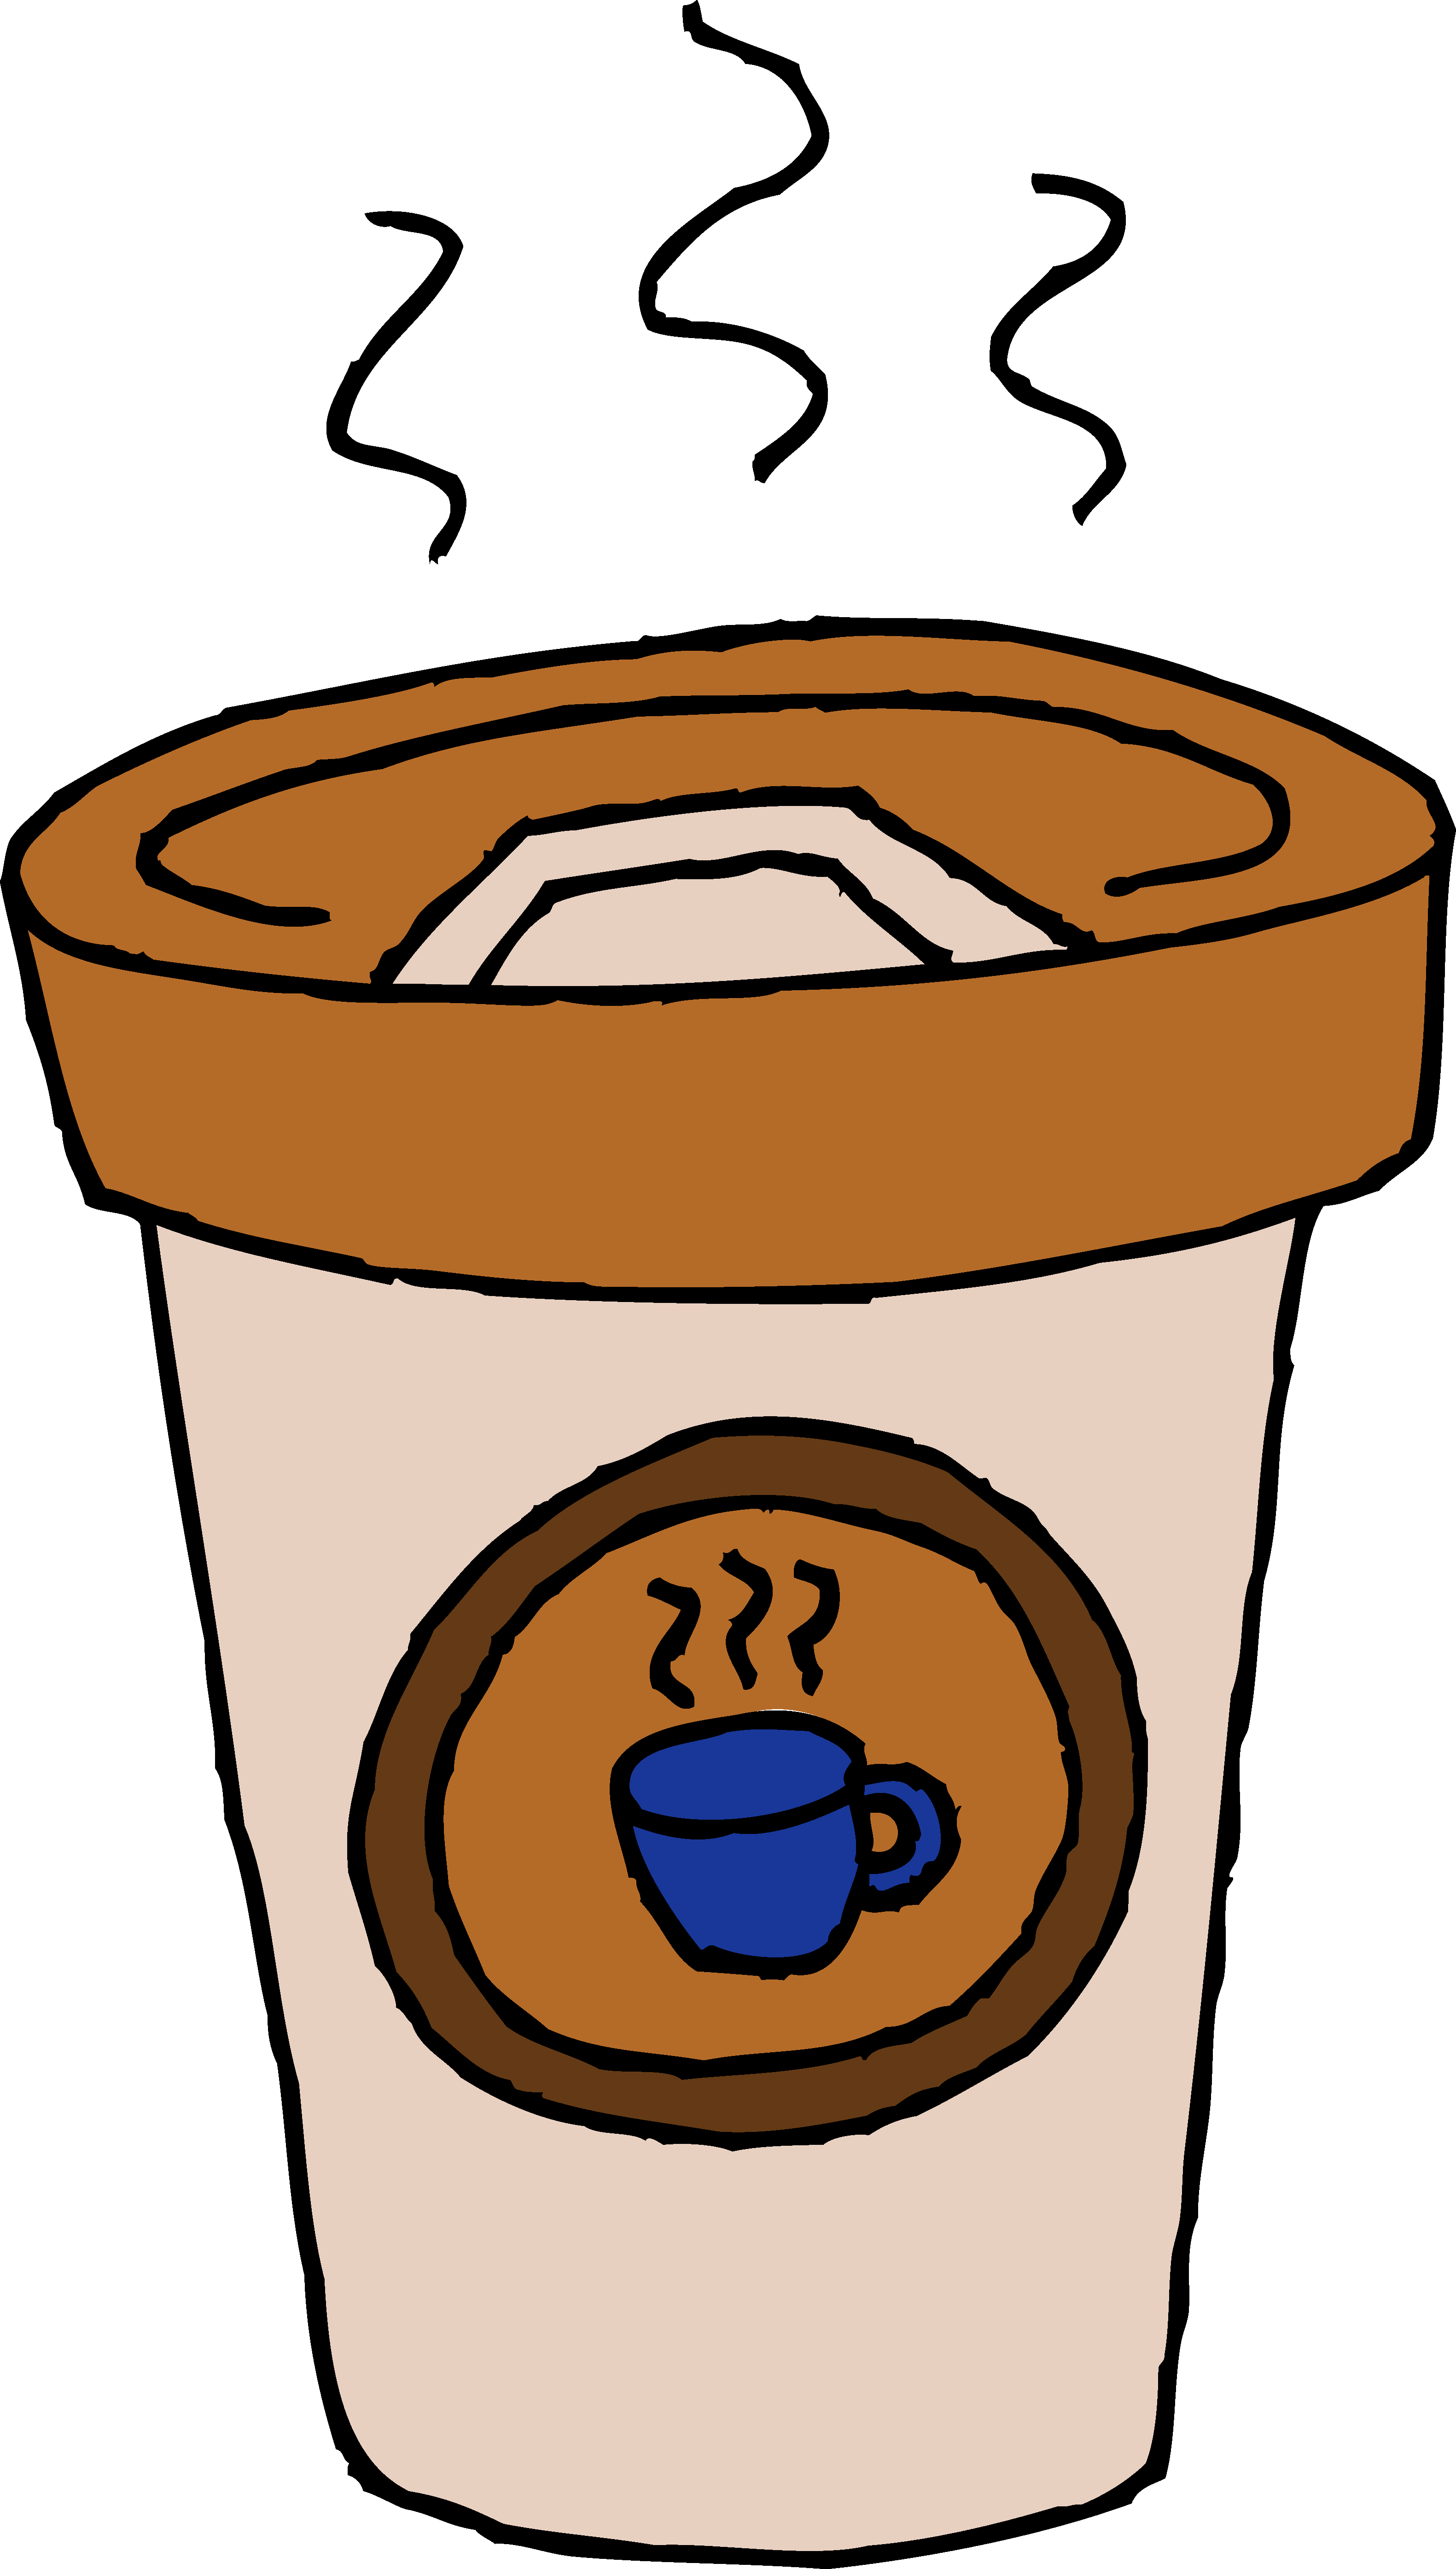 Coffee Mugs Clip Art - Clipar